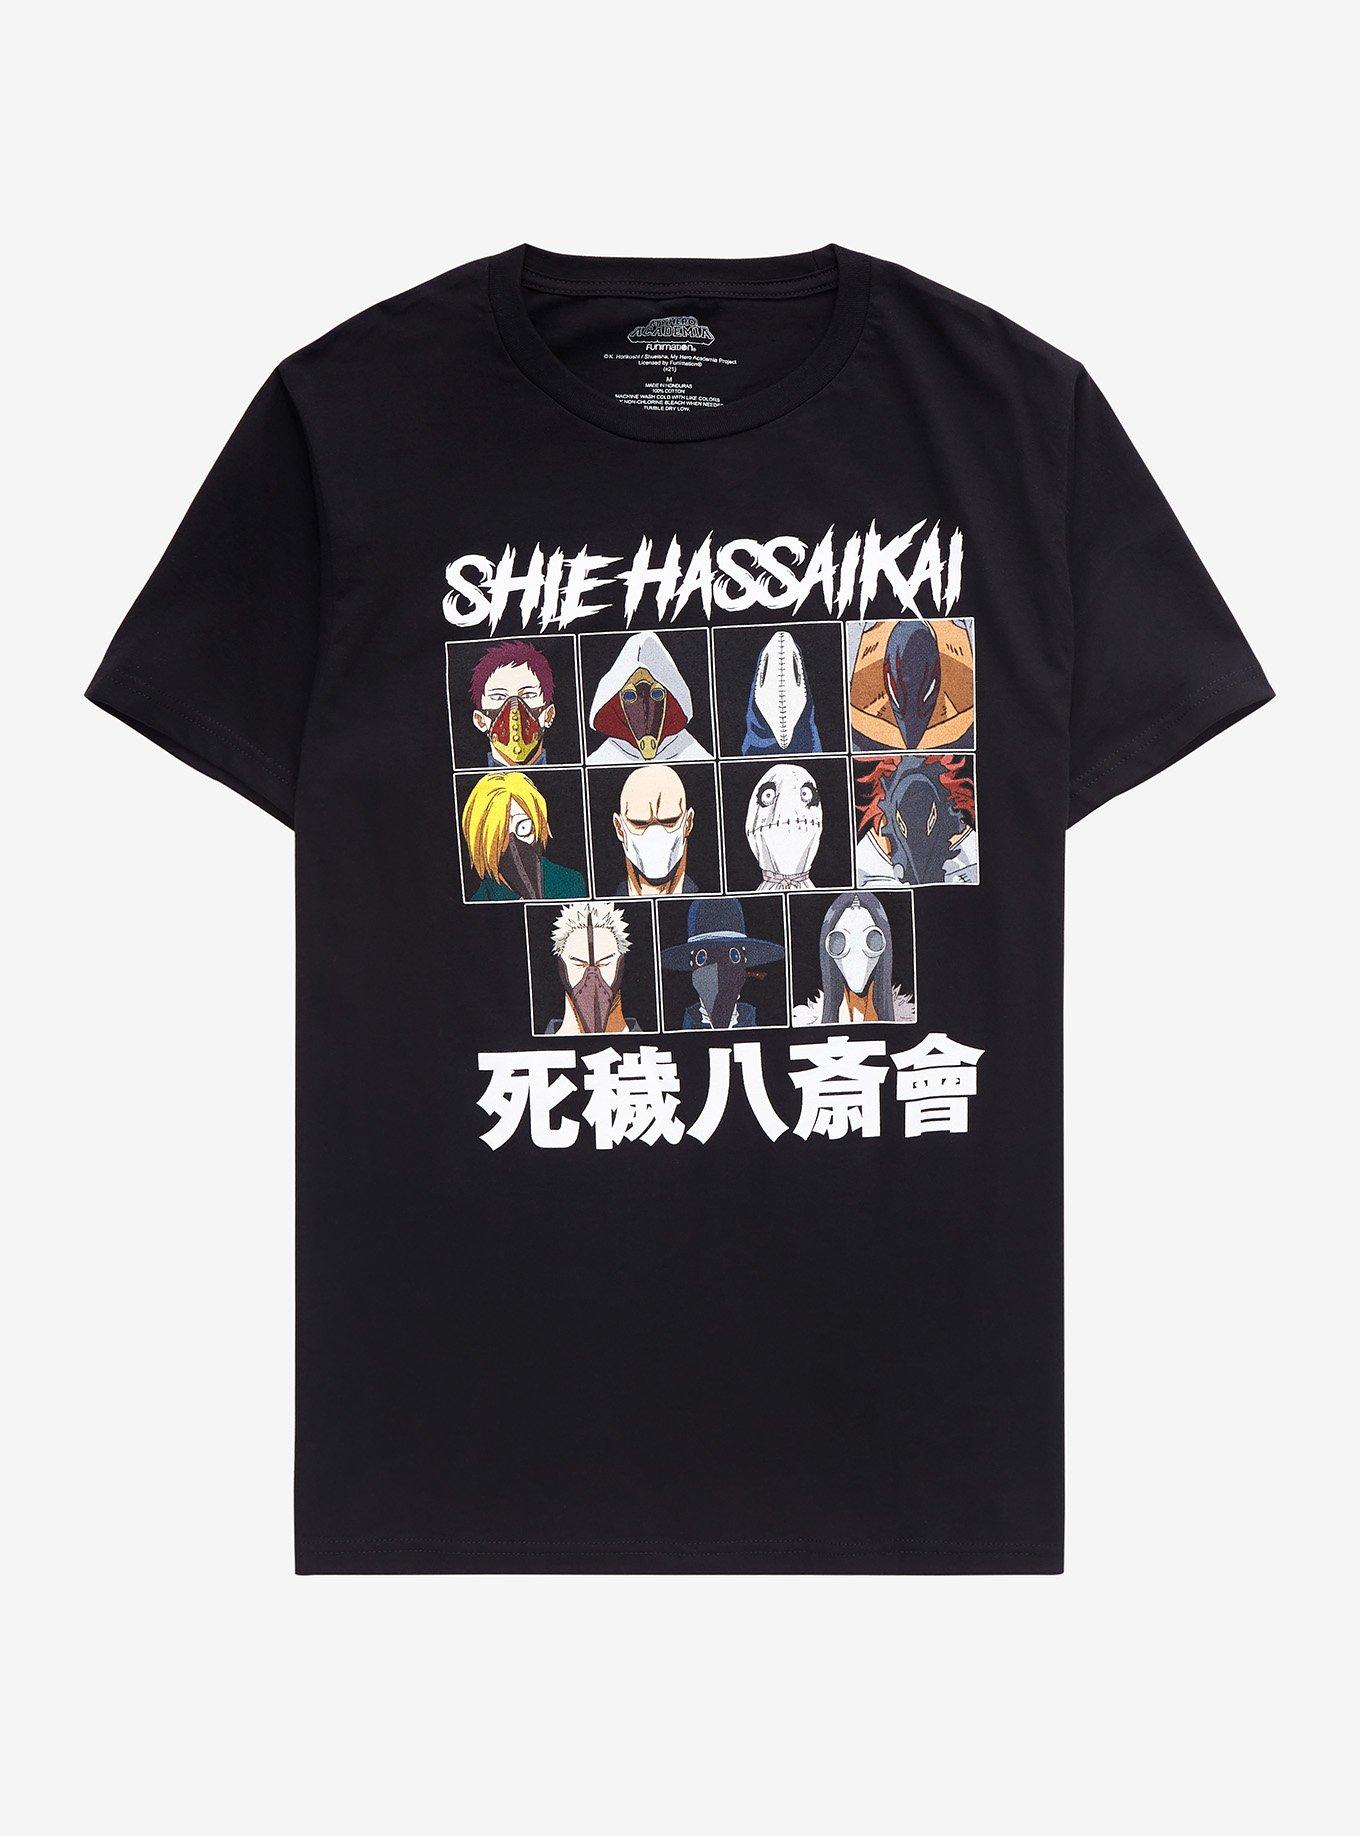 My Hero Academia Shie Hassaika T-Shirt | Hot Topic